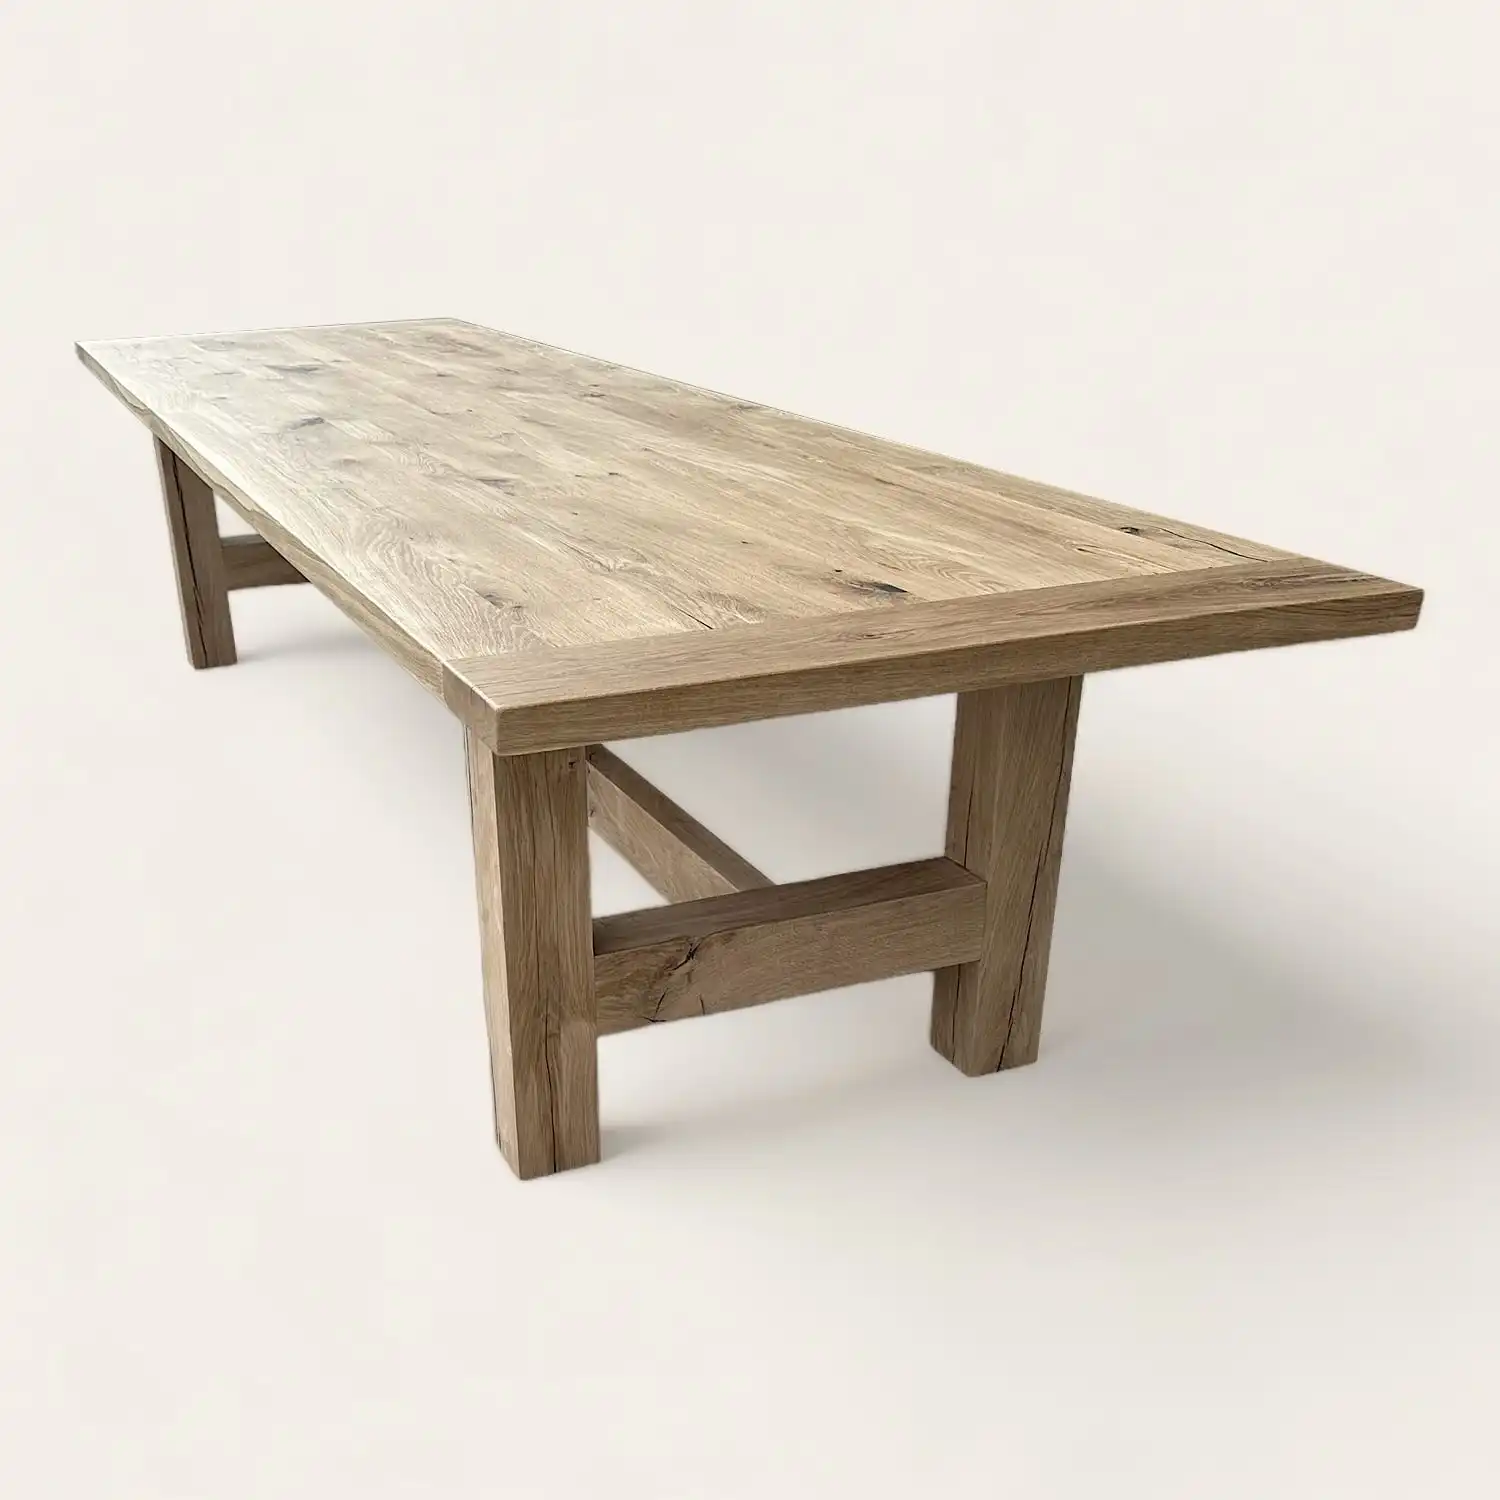  Une table rustique à manger en bois ancien sur fond blanc. 